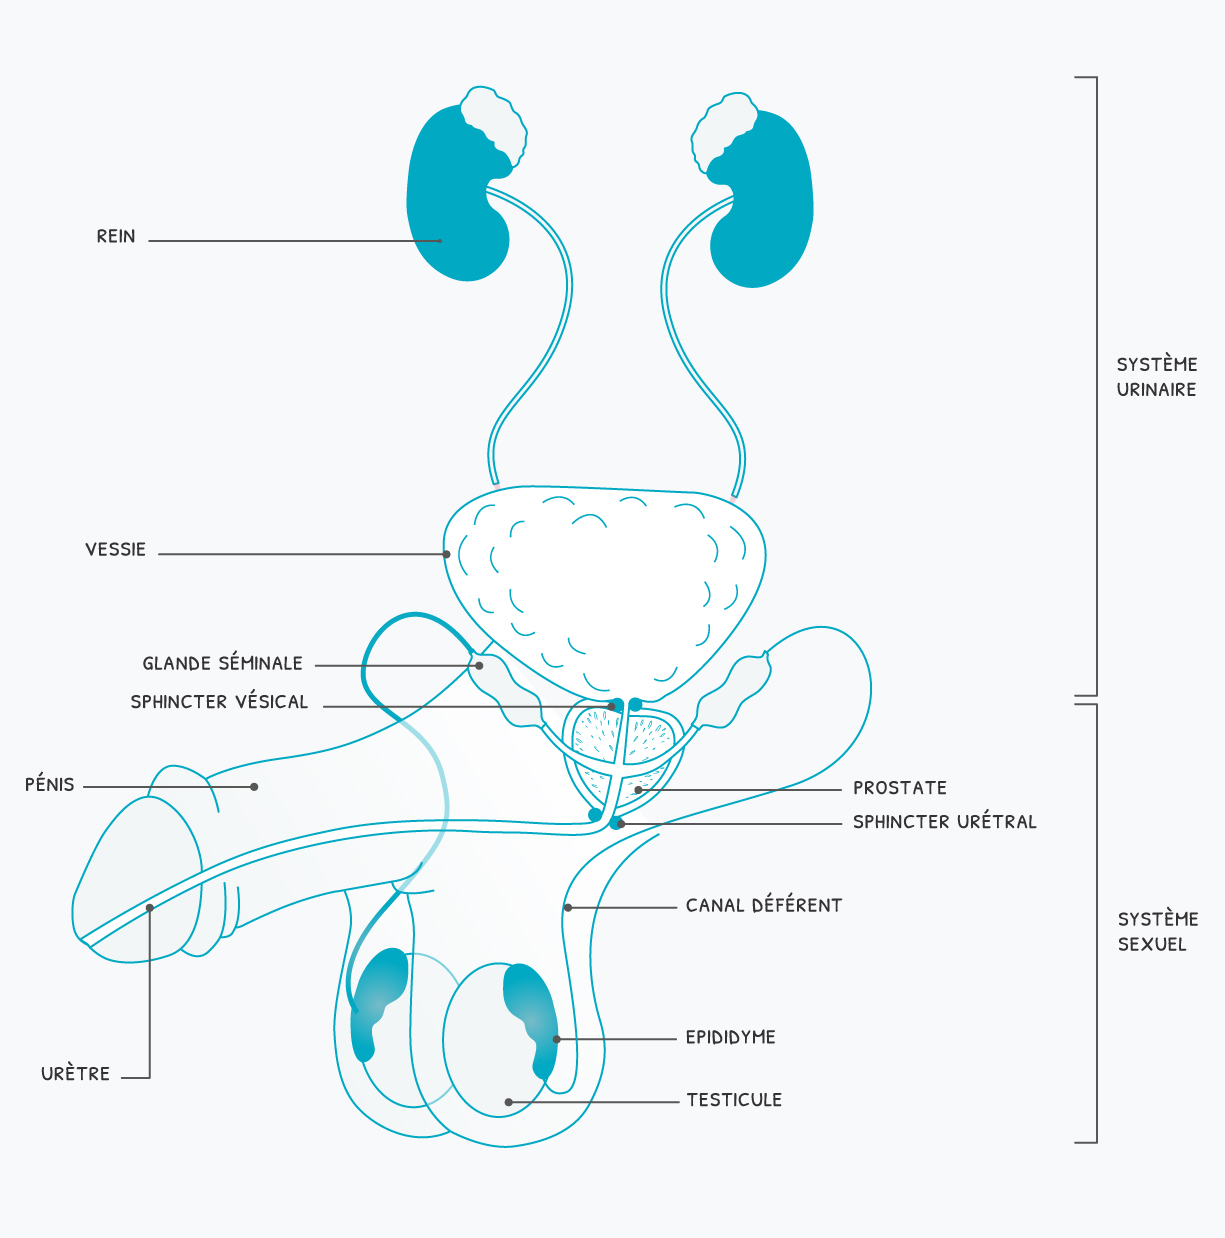 schéma système urinaire et sexuel masculin